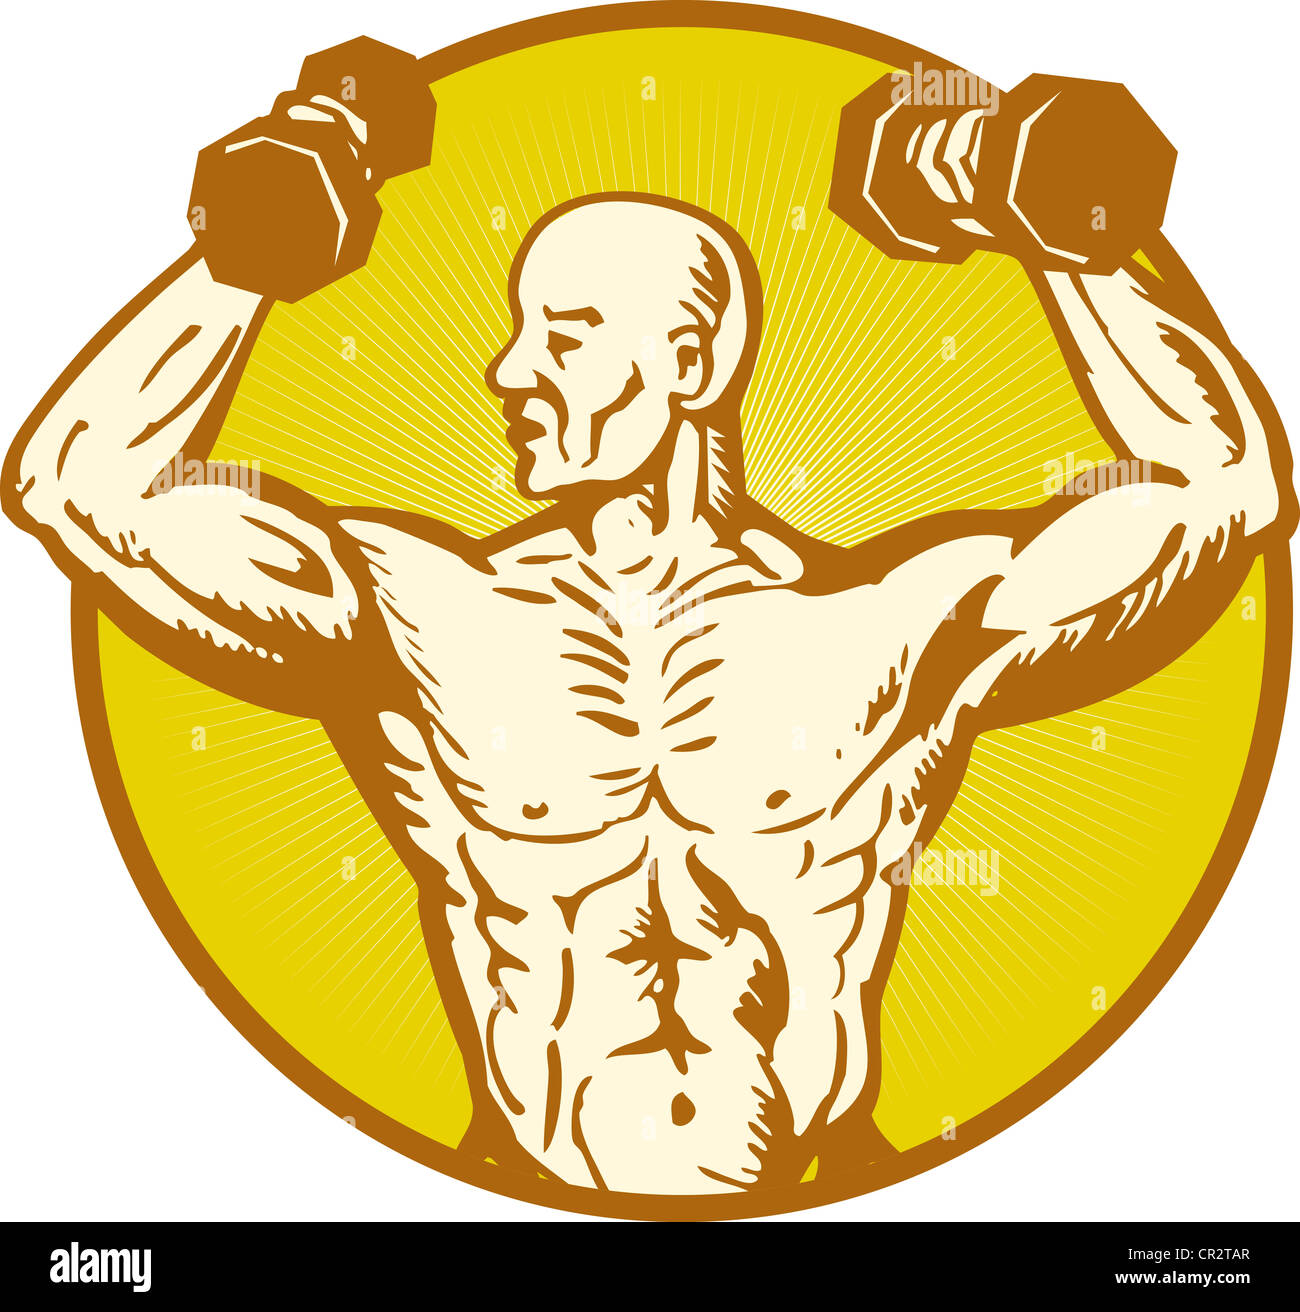 Illustration de l'homme anatomie humaine Body builder flexing muscles sur fond isolé situé à l'intérieur du cercle style gravure sur bois Banque D'Images